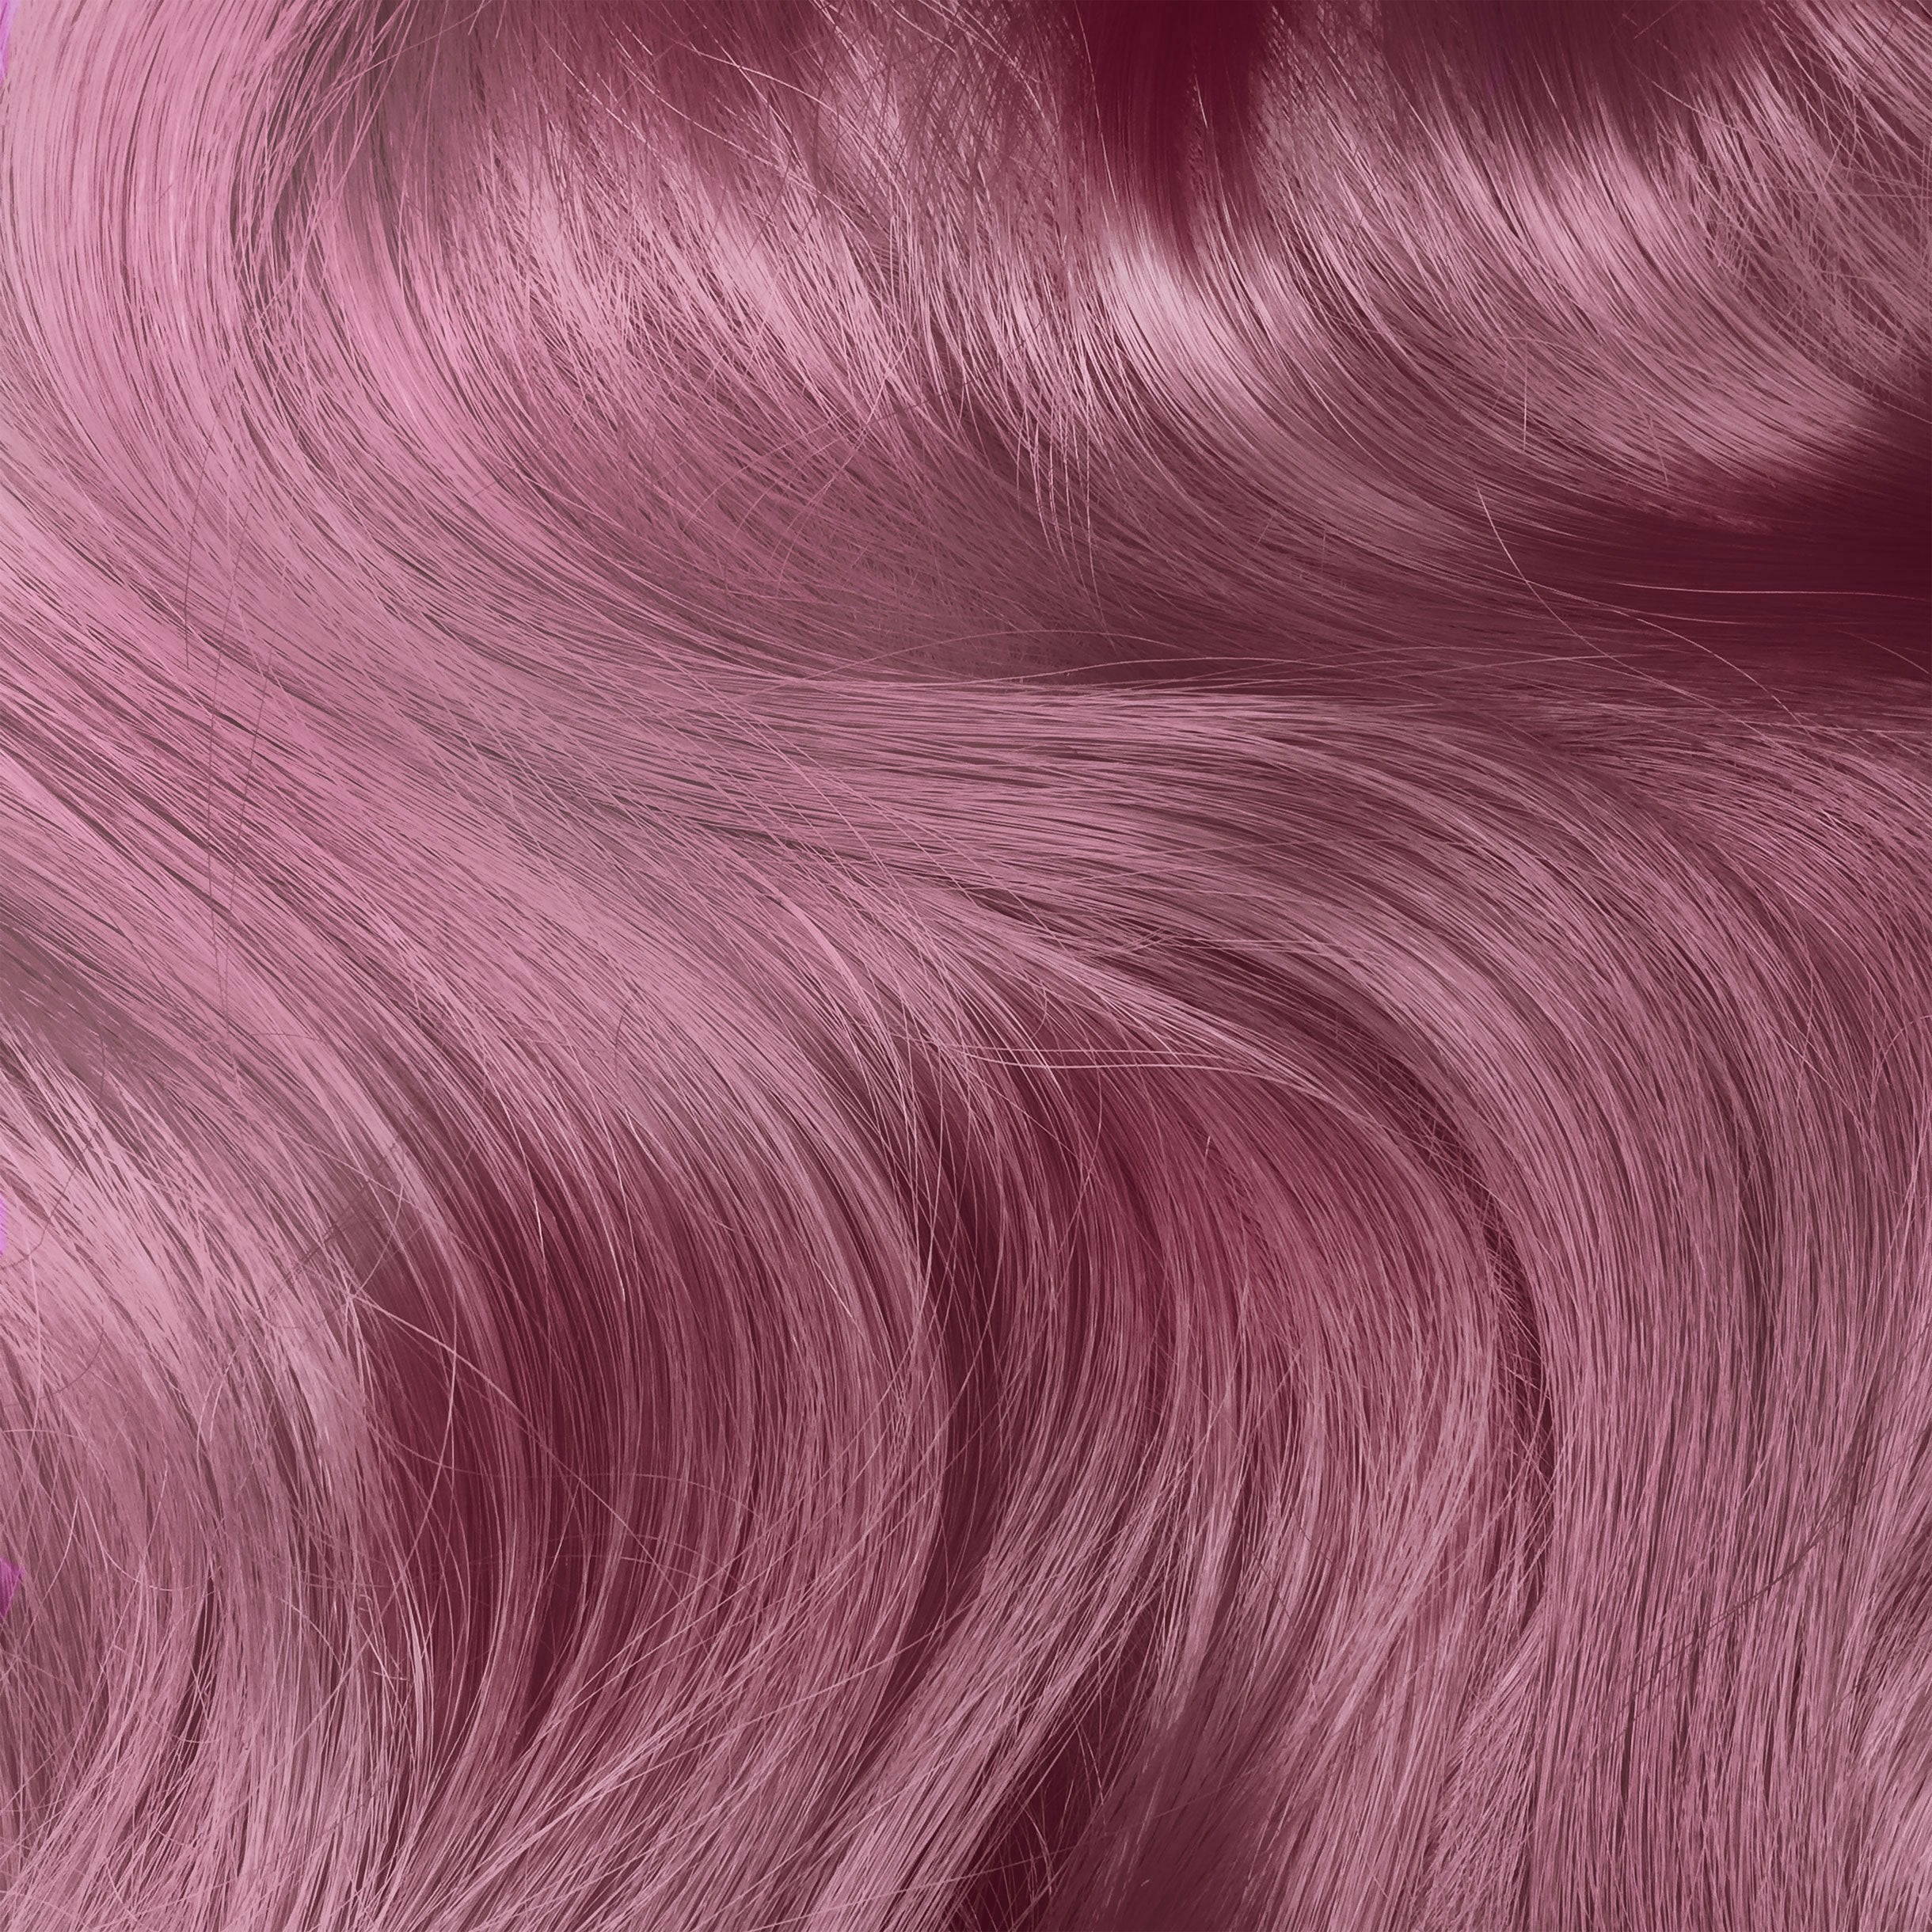 Unicorn Hair Tints variant:Sext